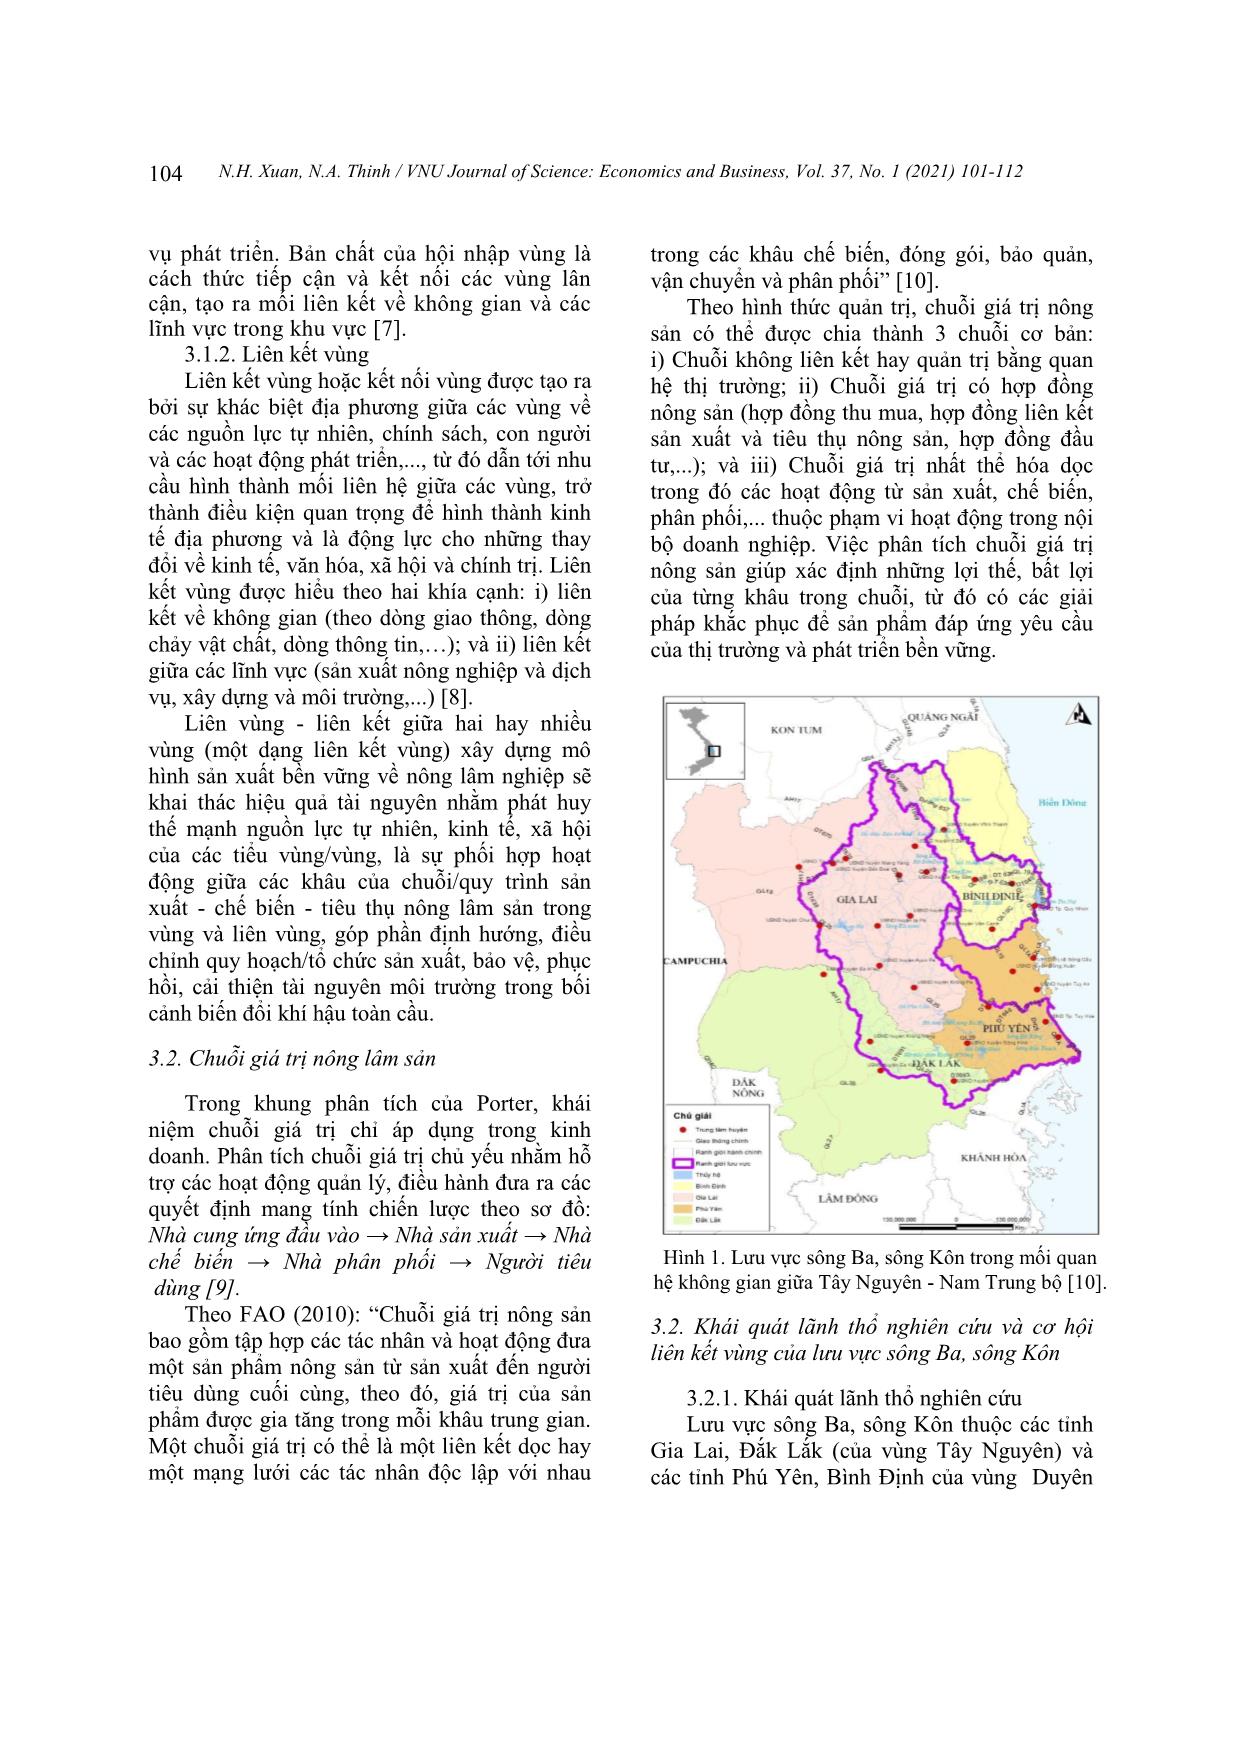 Liên kết vùng của chuỗi giá trị hàng hóa nông lâm nghiệp trên lưu vực sông Ba, sông Kôn trang 4